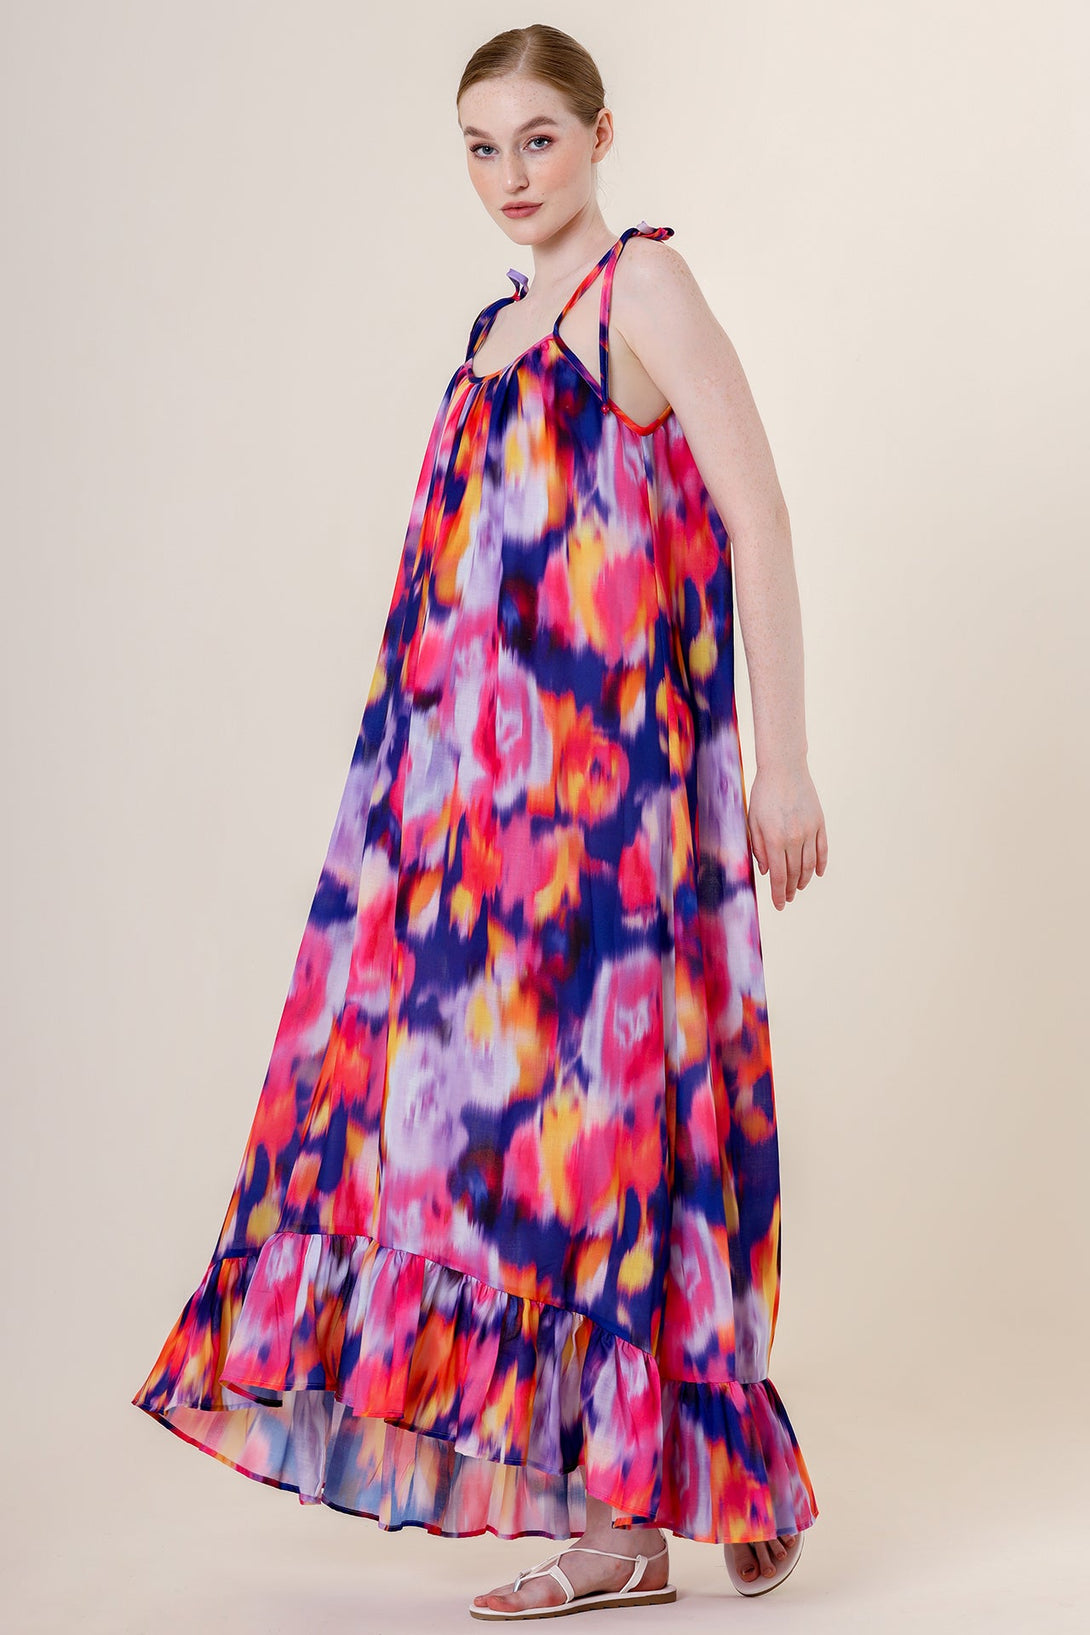  "purple maxi dress" "plus size maxi dresses" "flower print maxi dress" "maxi printed dress"